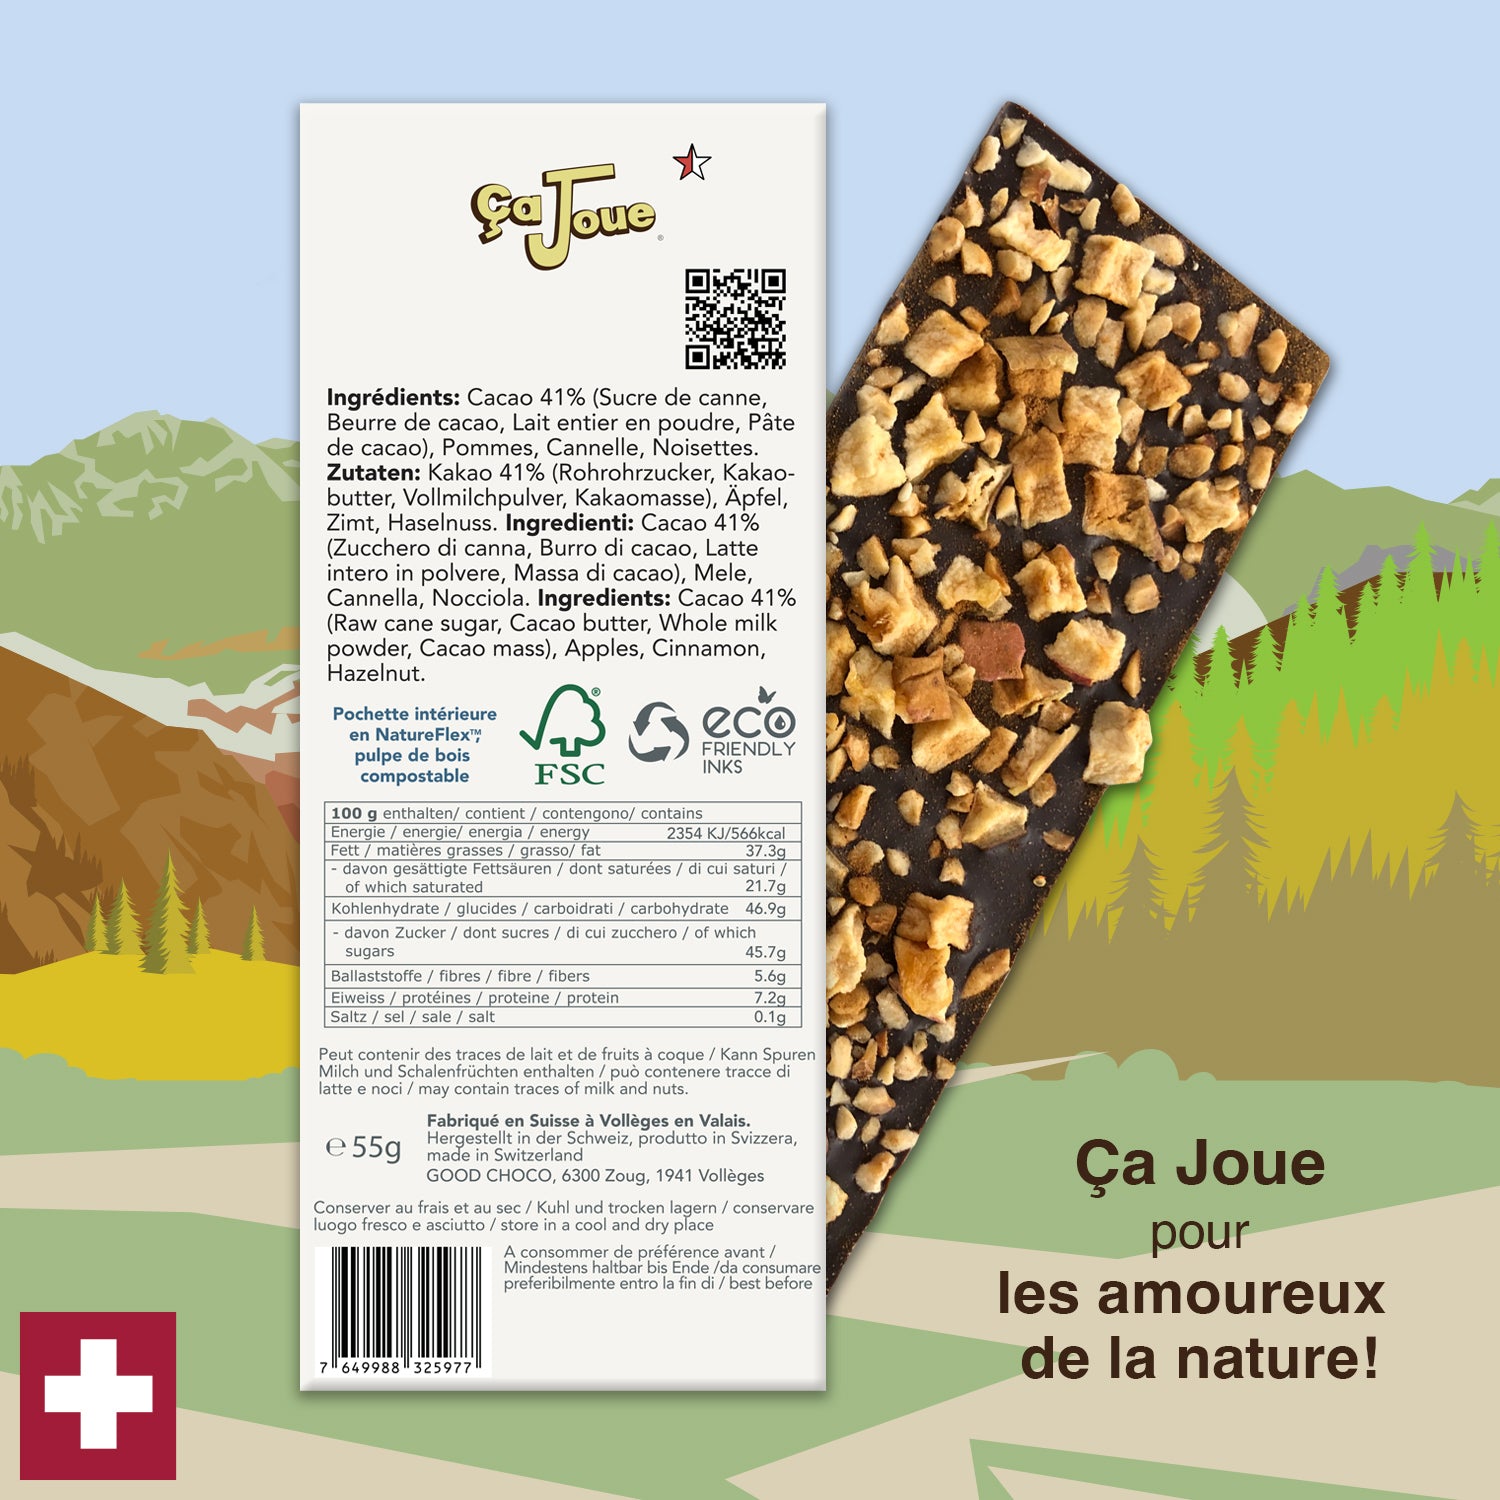 Ça Joue für die Edelweiß (Ref-BL4) Milchschokolade aus Val de Bagnes